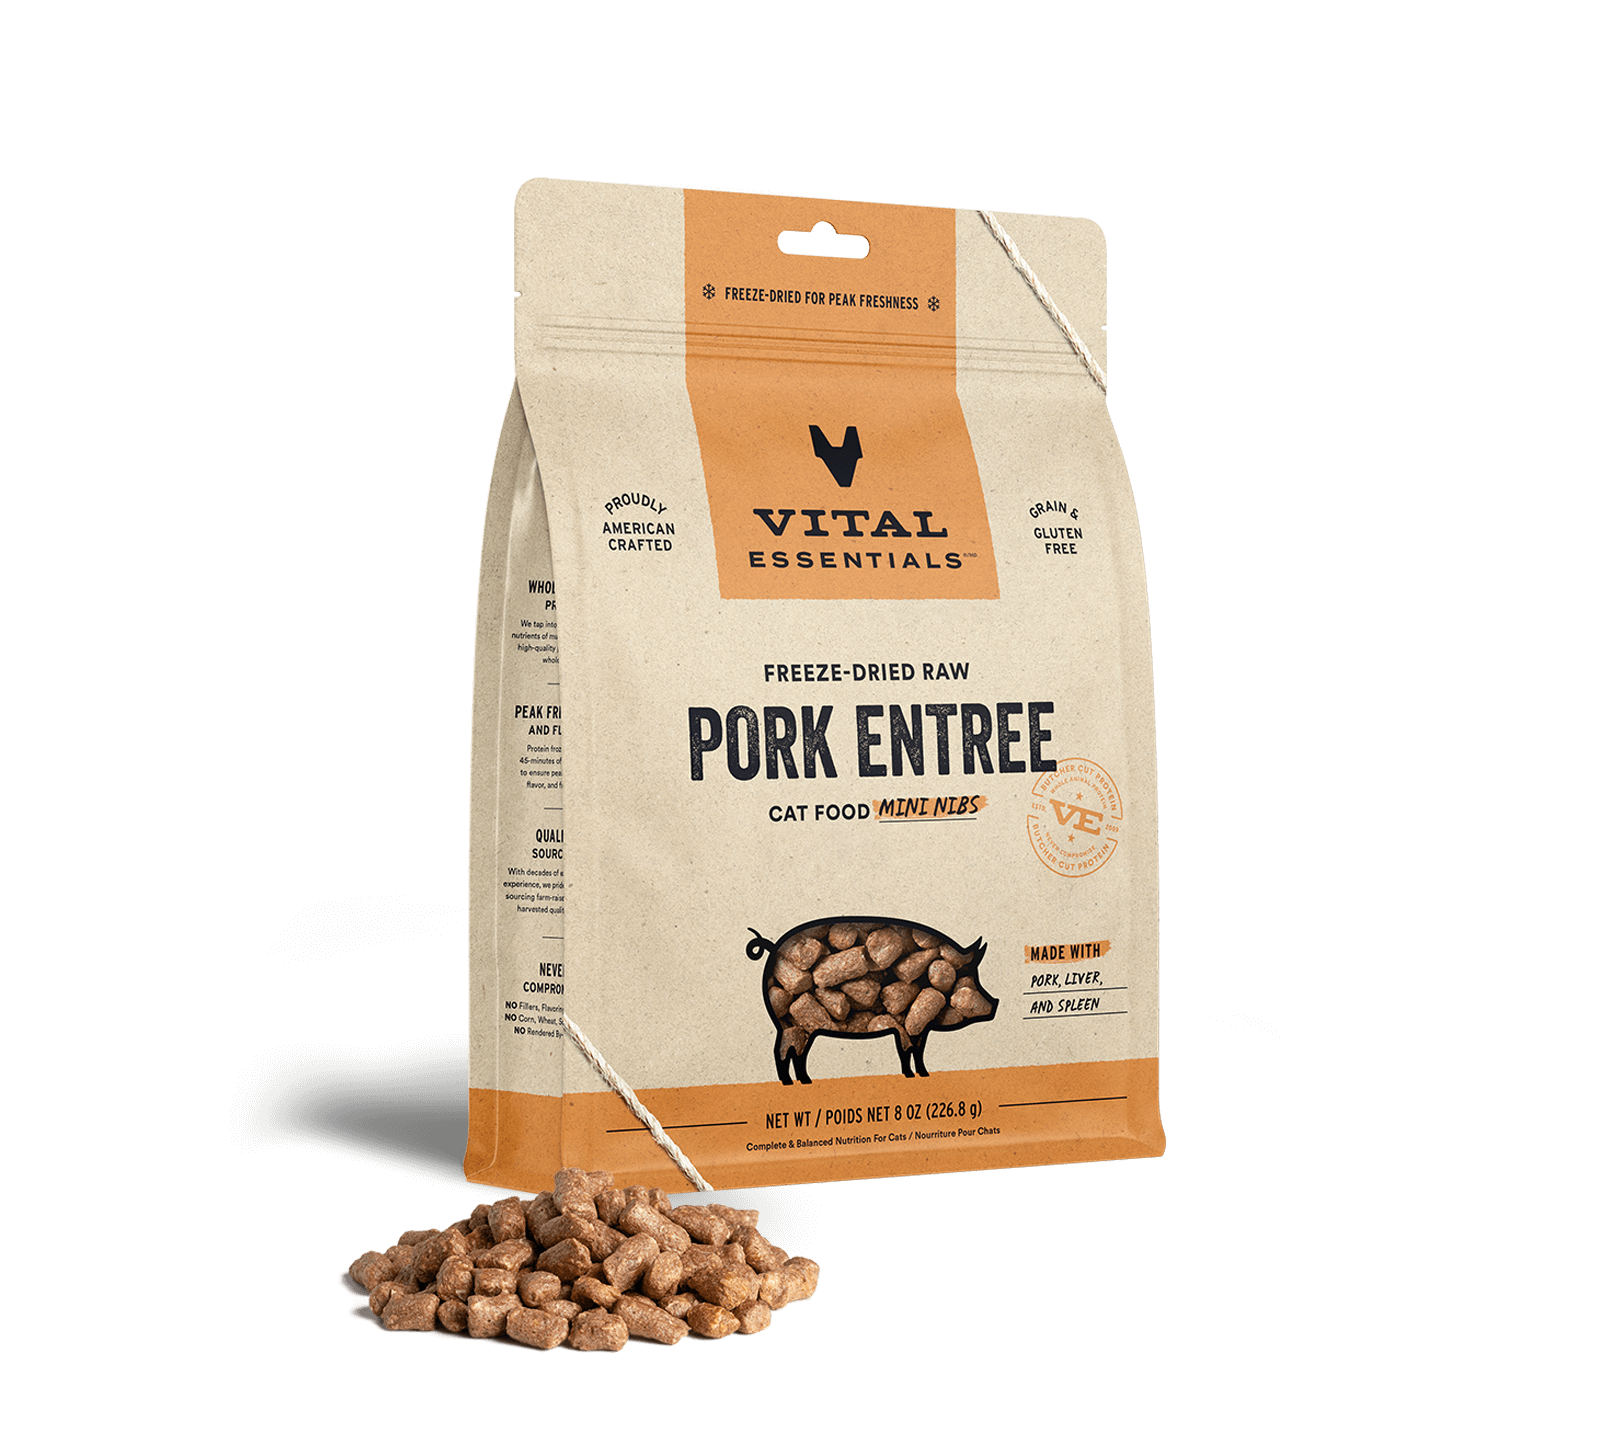 Vital Essentials Freeze-Dried Raw Pork Entree Cat Food Mini Nibs, 8 oz - Healing/First Aid